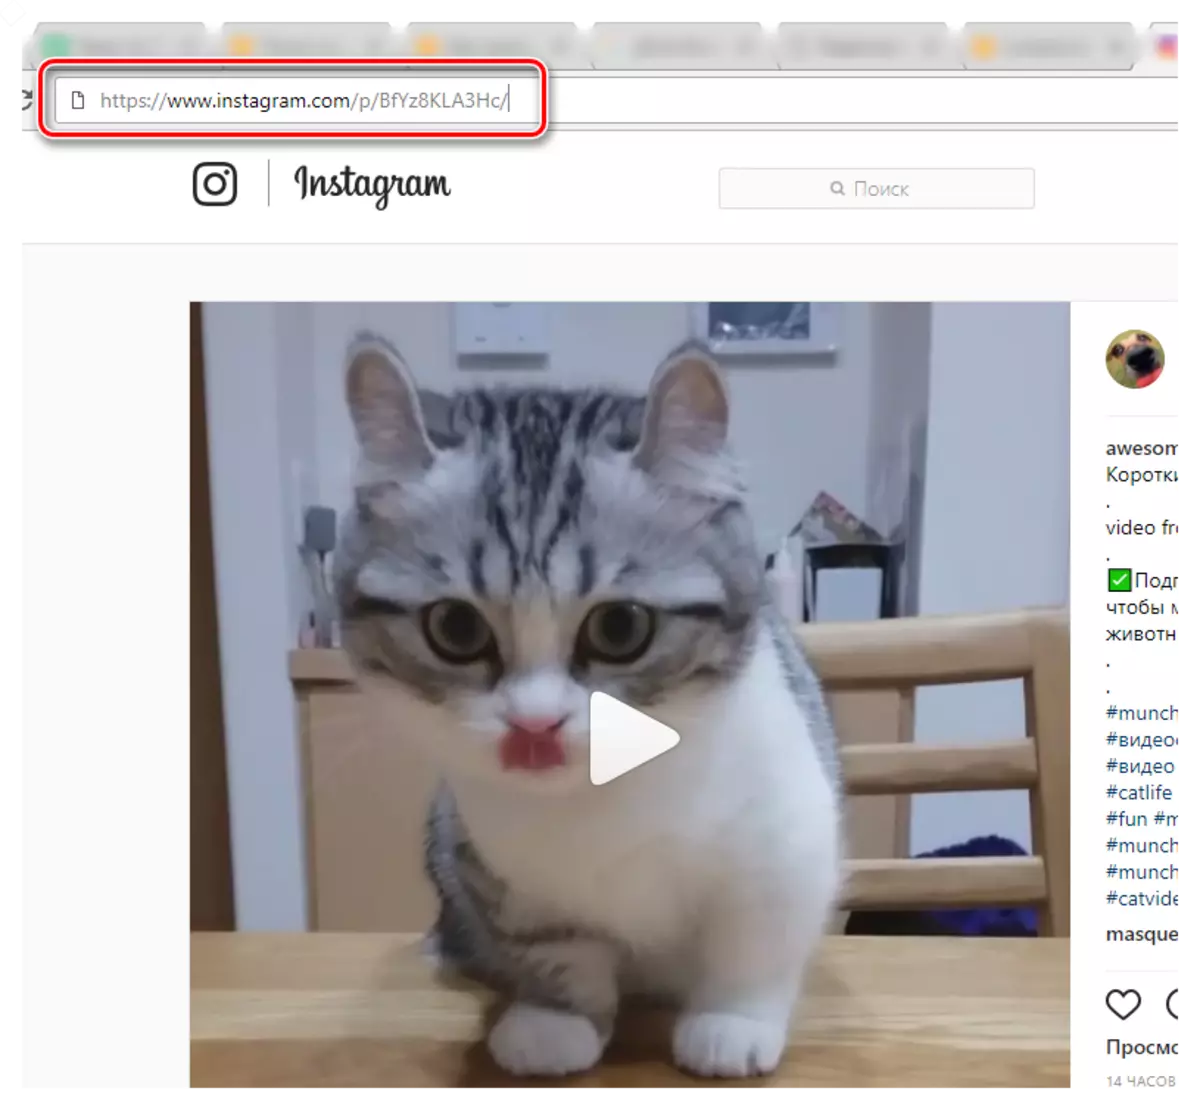 ဗွီဒီယိုများကို Instagram 0 န်ဆောင်မှုမှလင့်ခ်များကိုကူးယူခြင်း